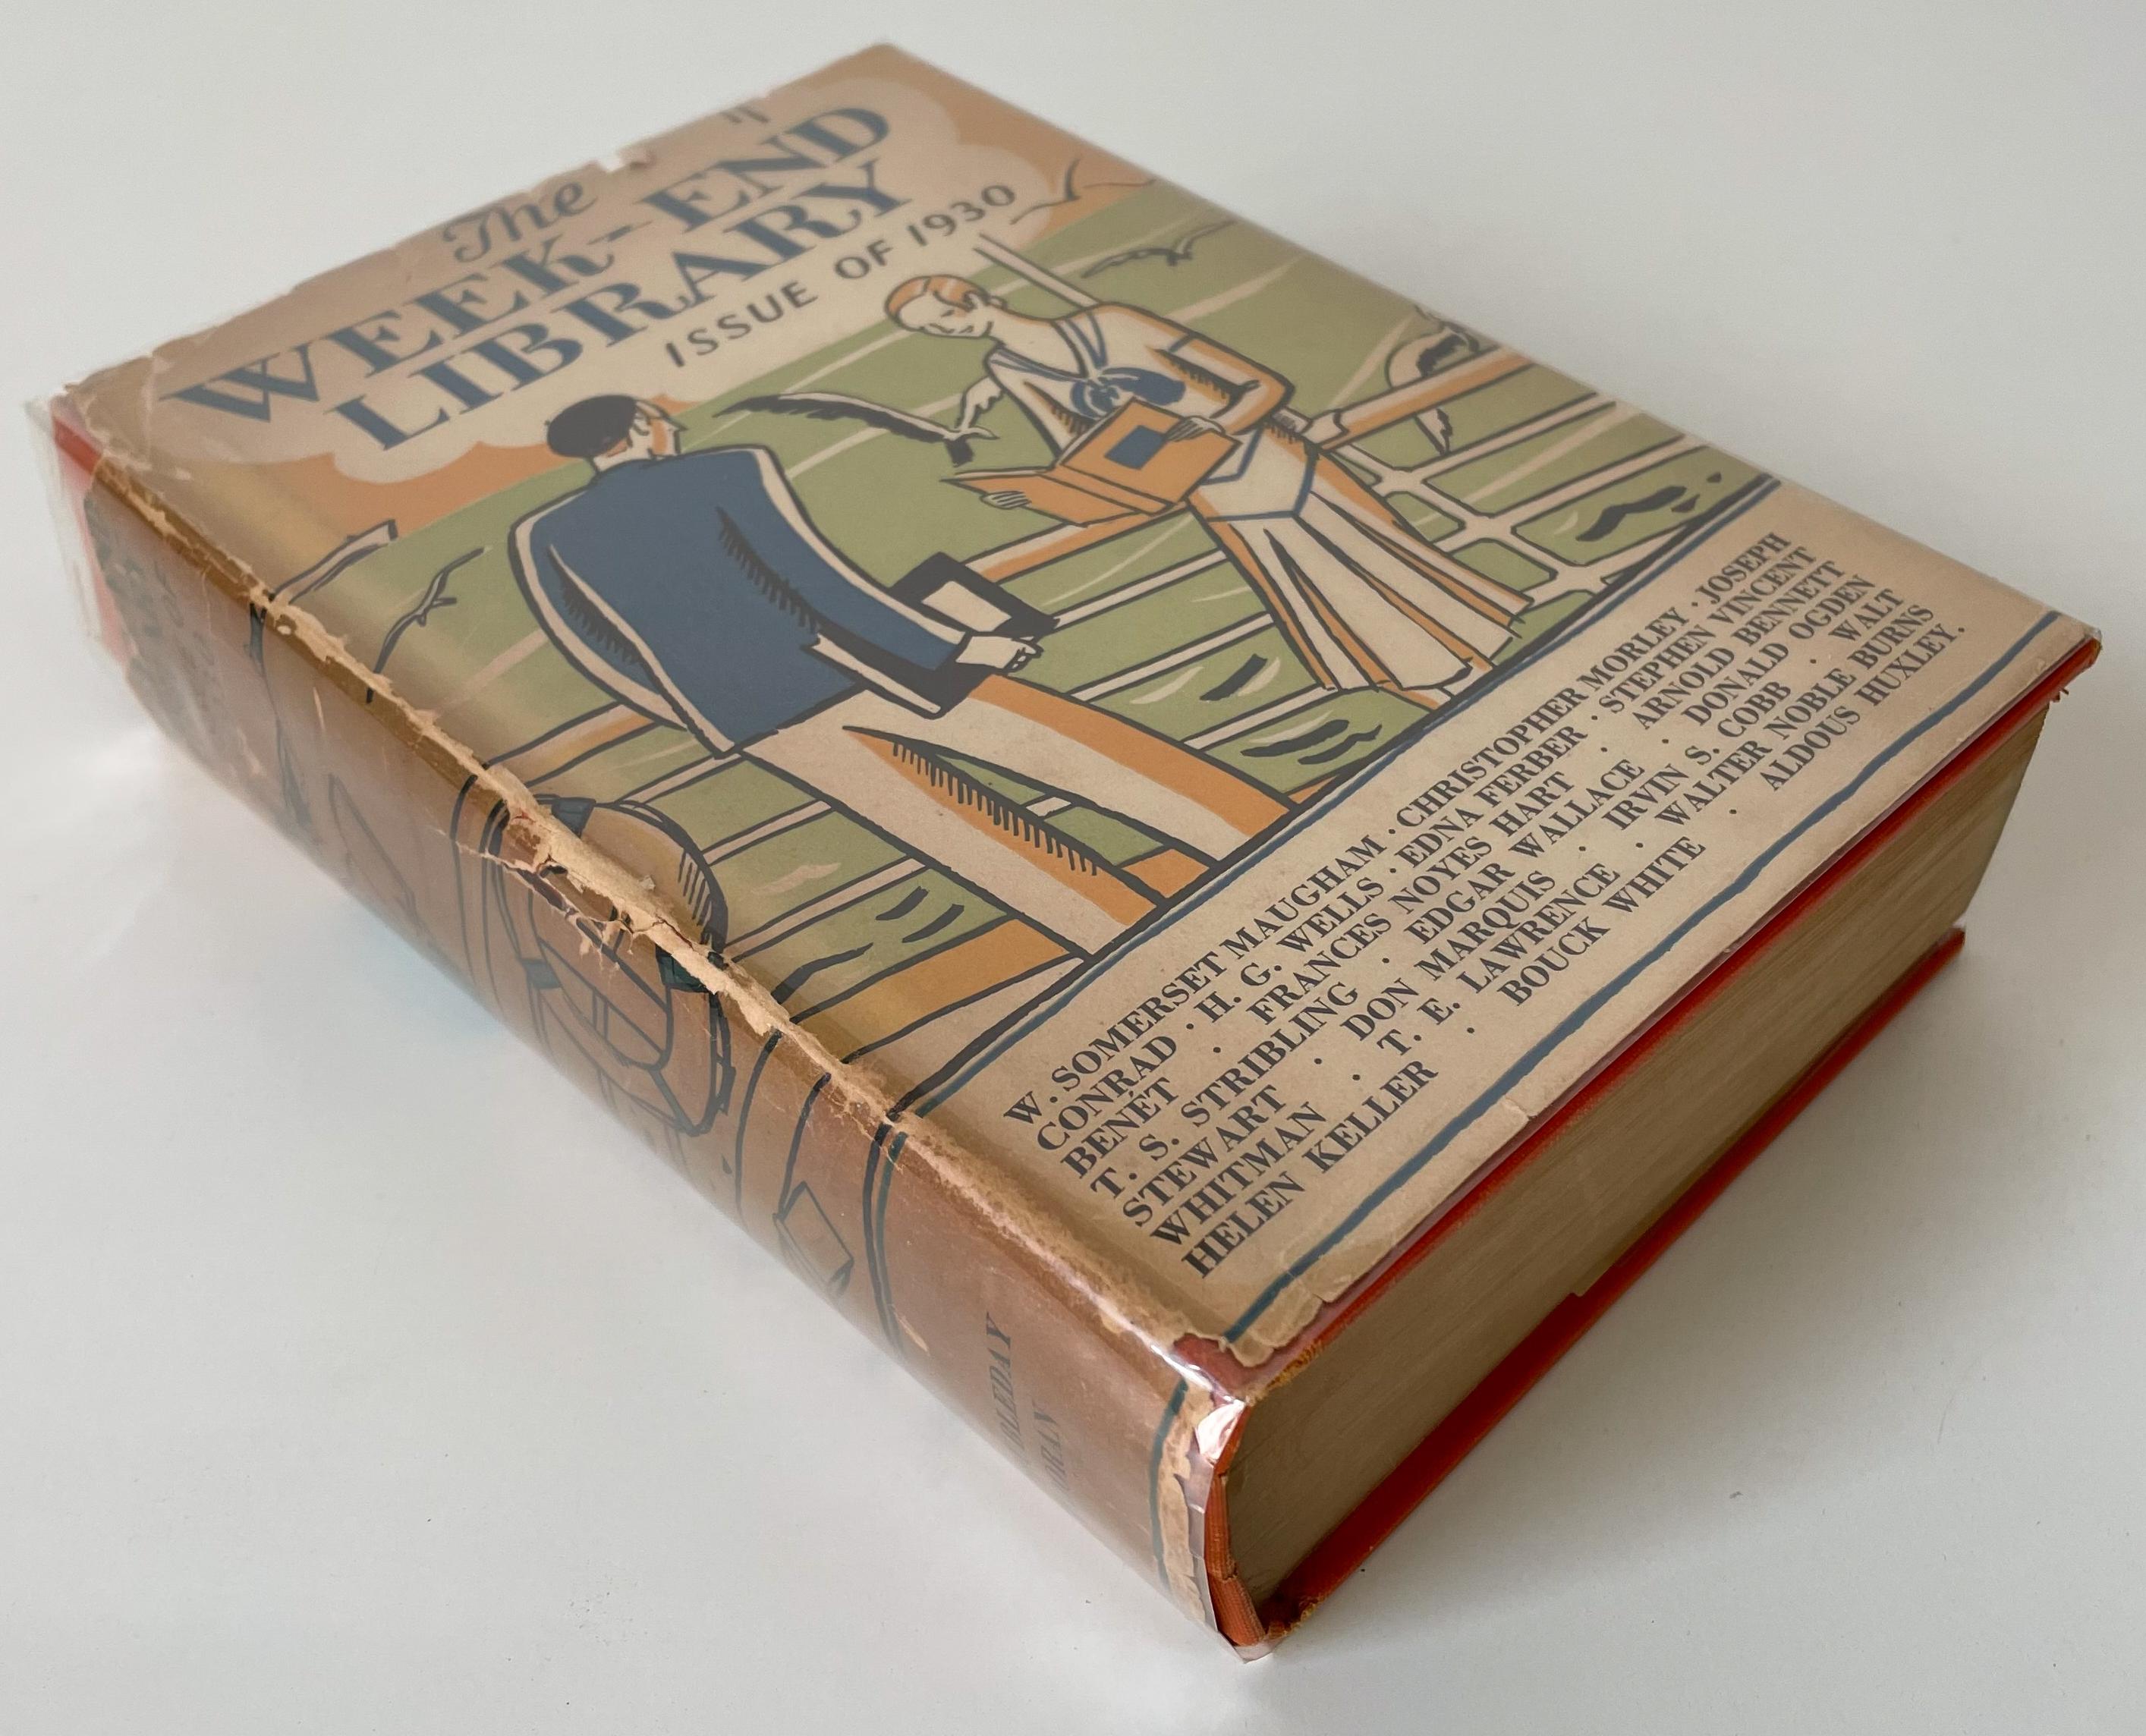 Anthologie d'œuvres littéraires publiée par Doubleday, Doran & Company en 1930. Il présente des histoires et des extraits de 